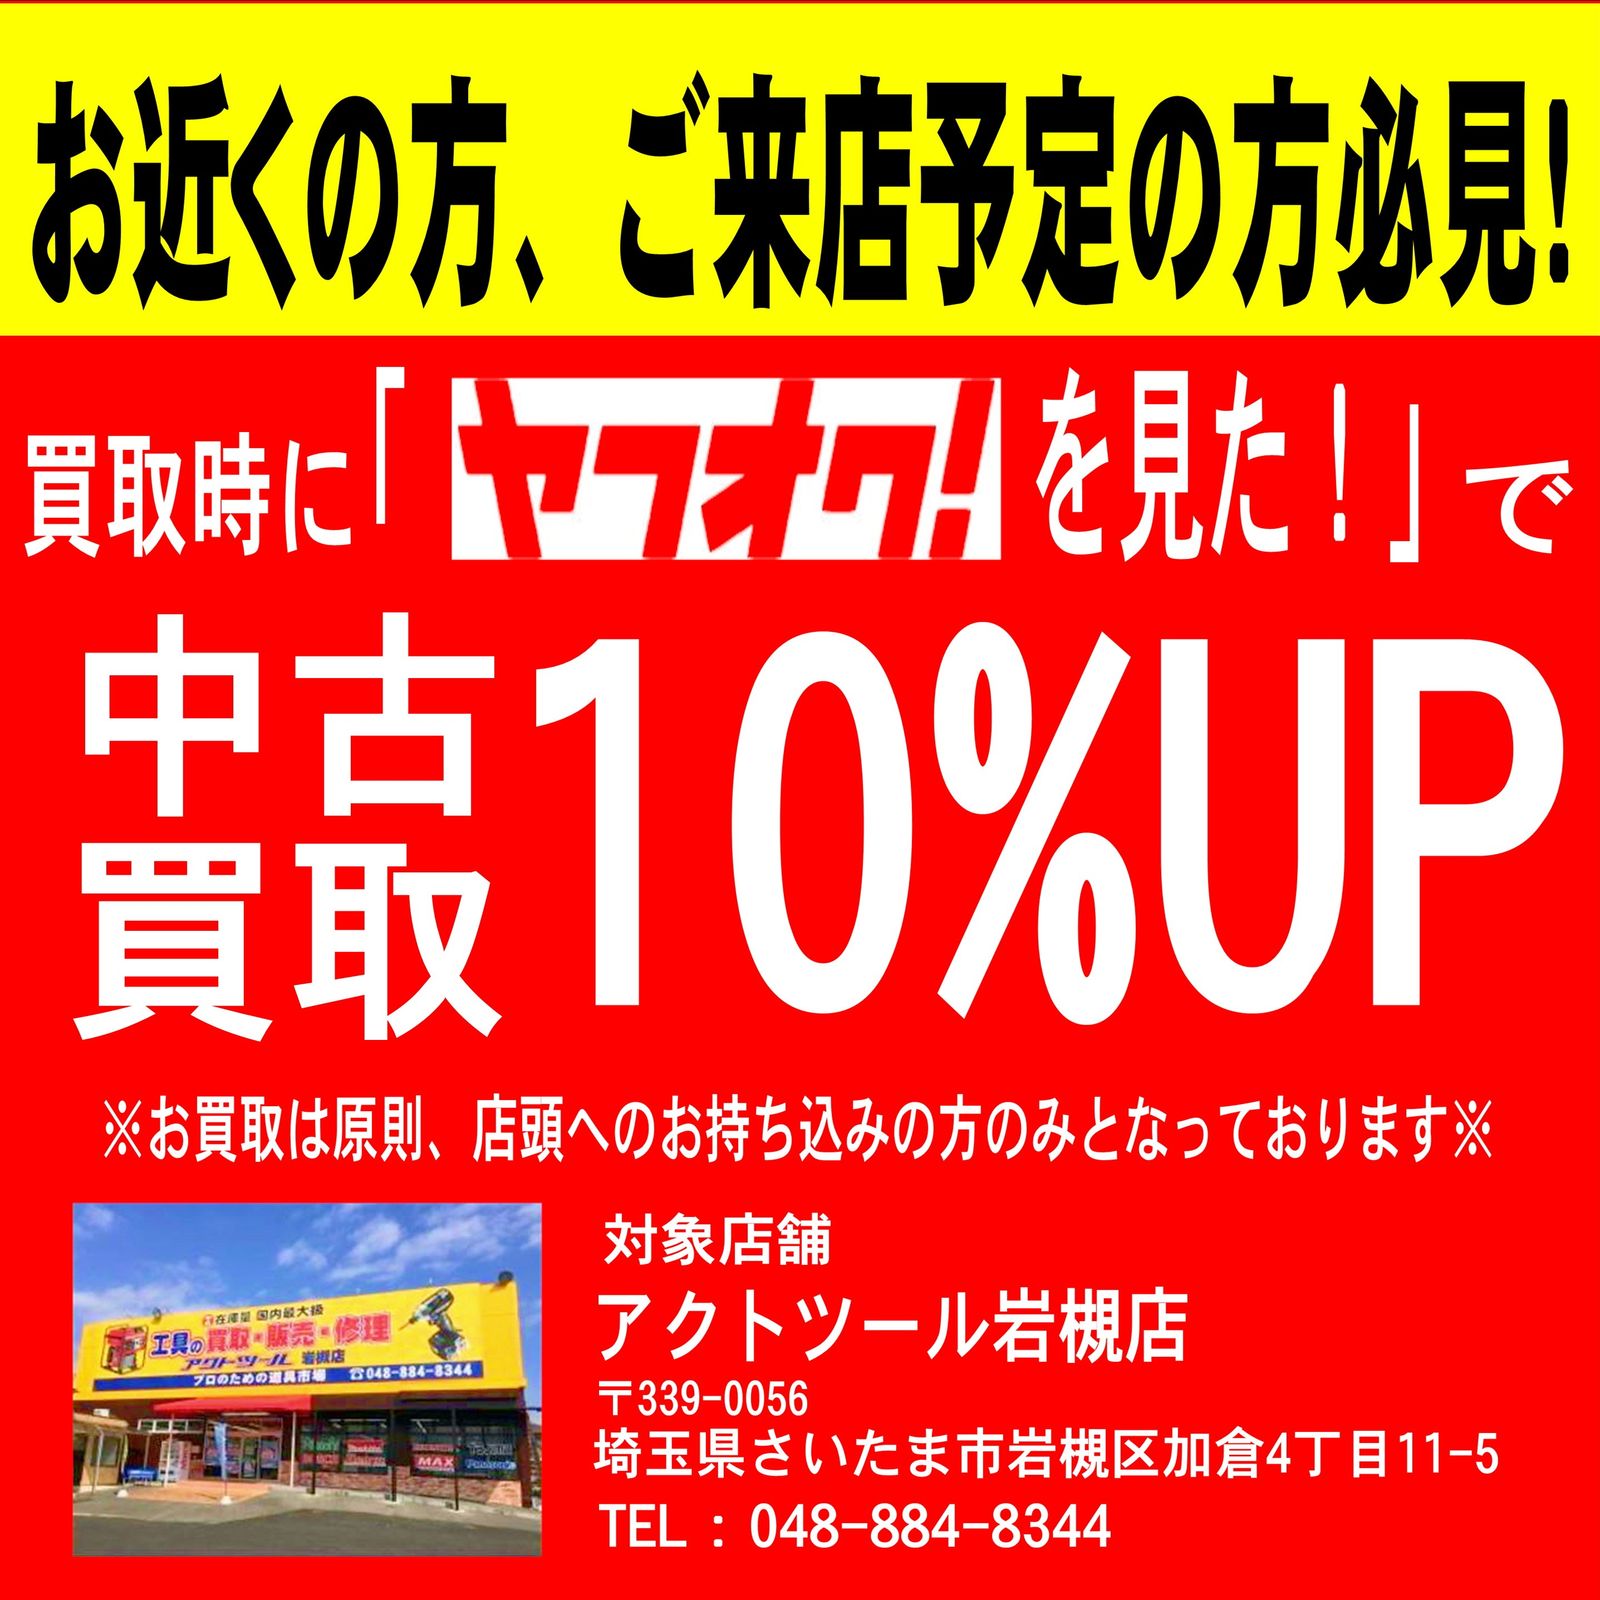 マキタ(Makita) エアー3点セット A-13041【岩槻店】 - メルカリ